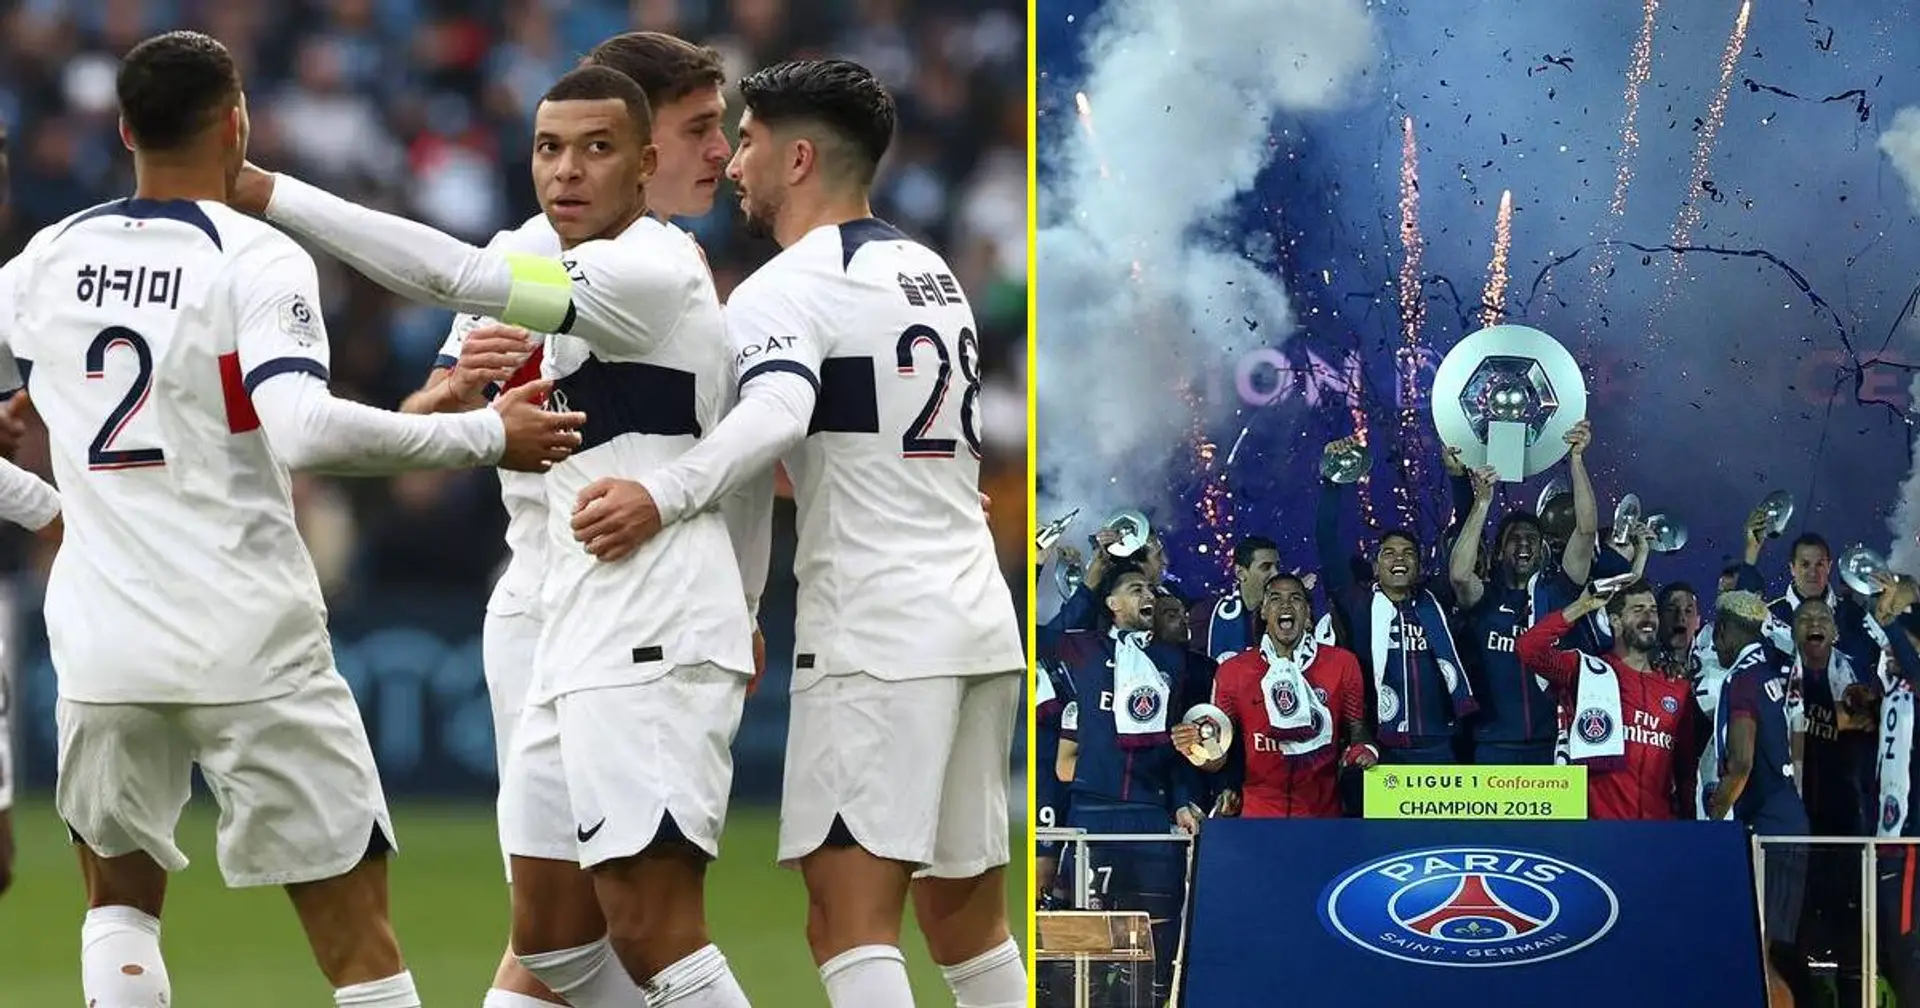 Le PSG à une victoire du titre en Ligue 1 - les Parisiens pourront ils célébrer leur triomphe ce week-end ? Réponse